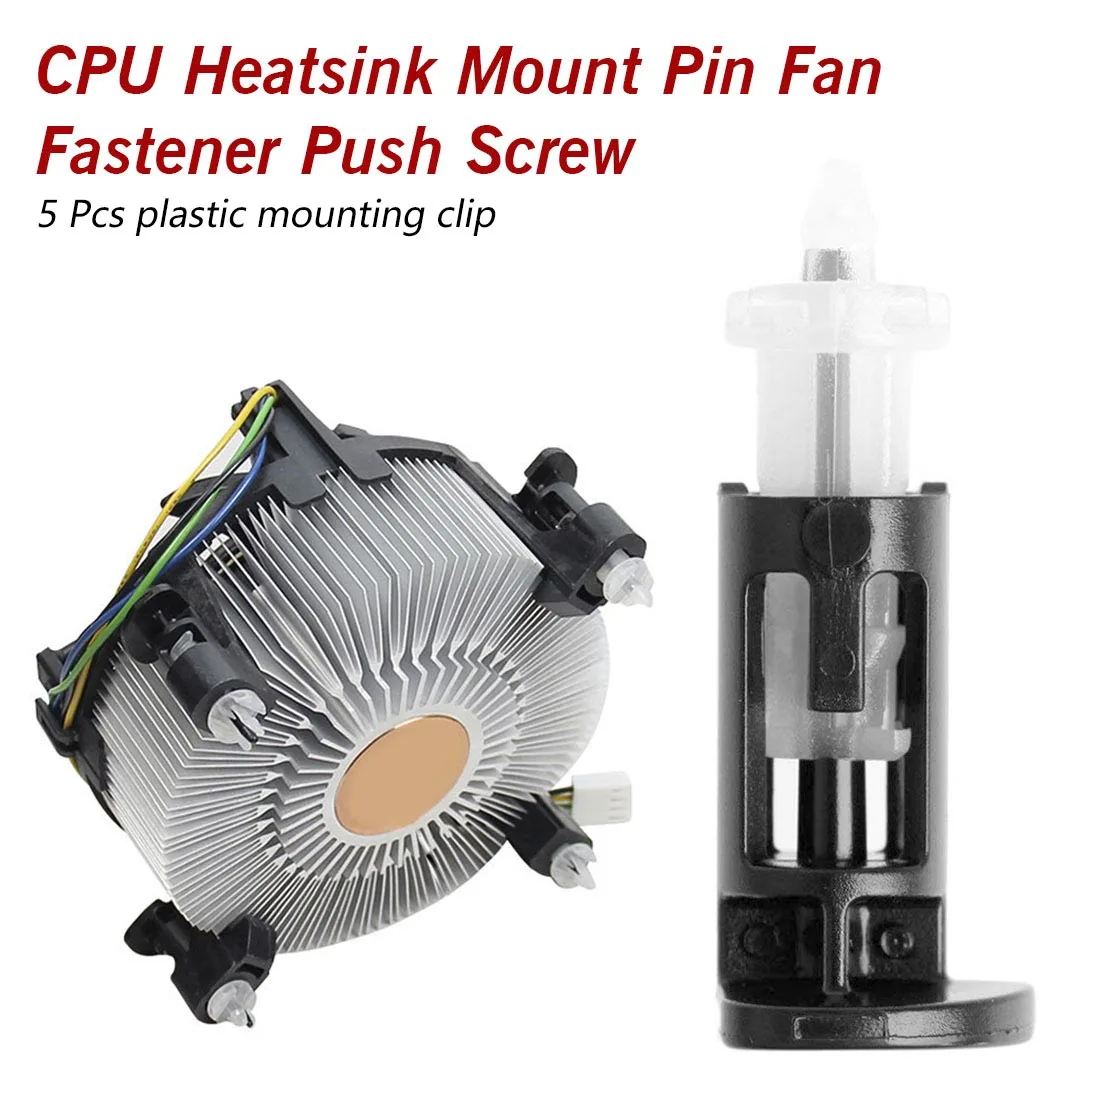 5 пар пластиковый крепежный зажим для кулеров cpu 1155 775 cpu Heatsink Mount Pin Fan застежка нажимной винт